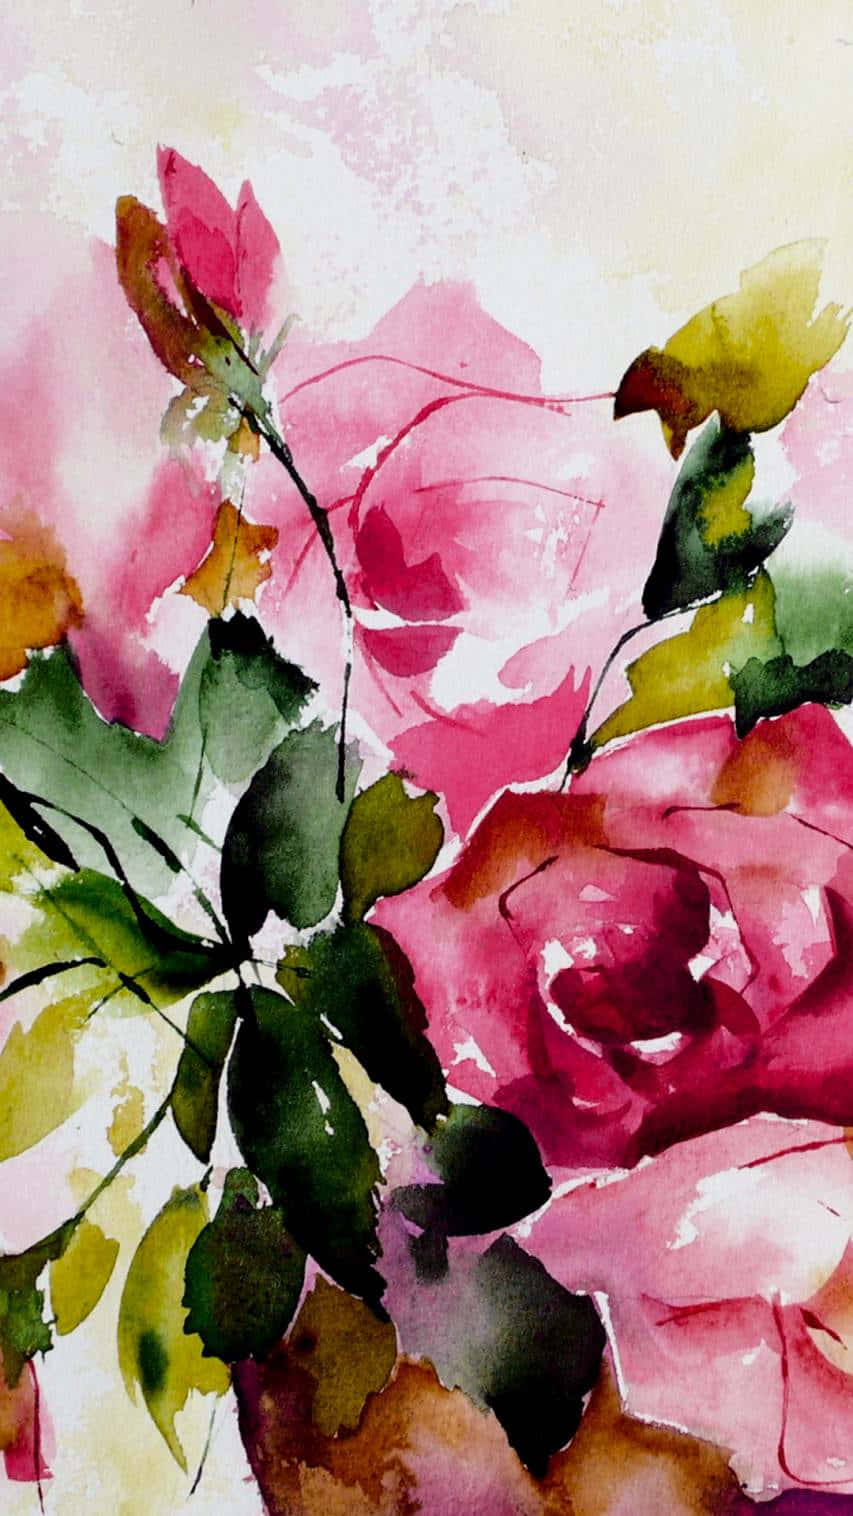 Einaquarellgemälde Von Pinken Rosen In Einer Vase. Wallpaper